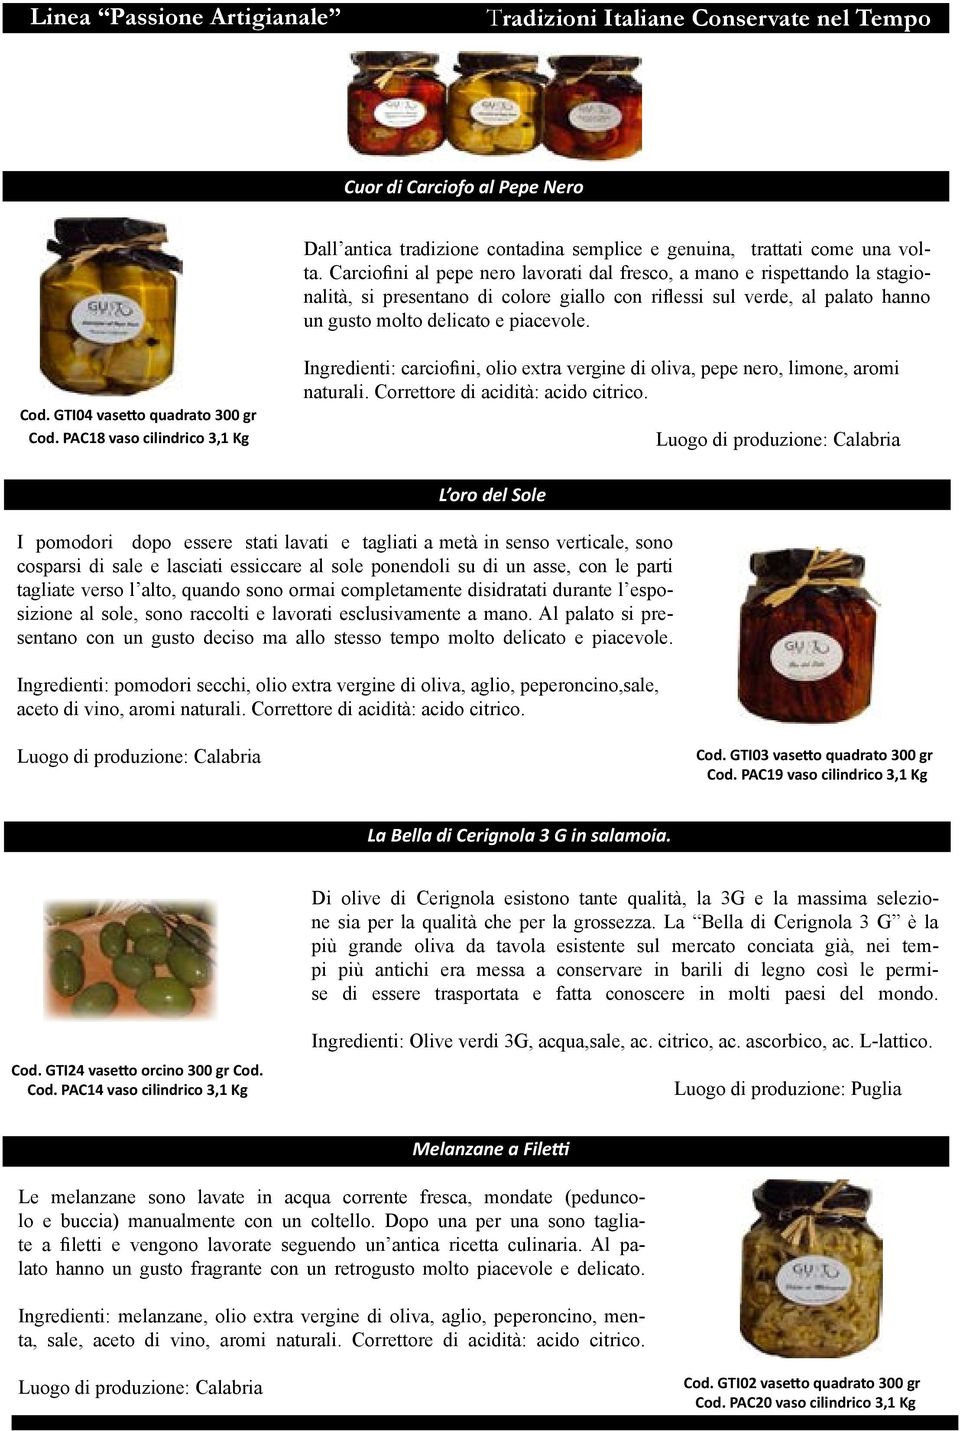 GTI04 vasetto quadrato 300 gr Cod. PAC18 vaso cilindrico 3,1 Kg Ingredienti: carciofini, olio extra vergine di oliva, pepe nero, limone, aromi naturali. Corret tore di acidità: acido citrico.